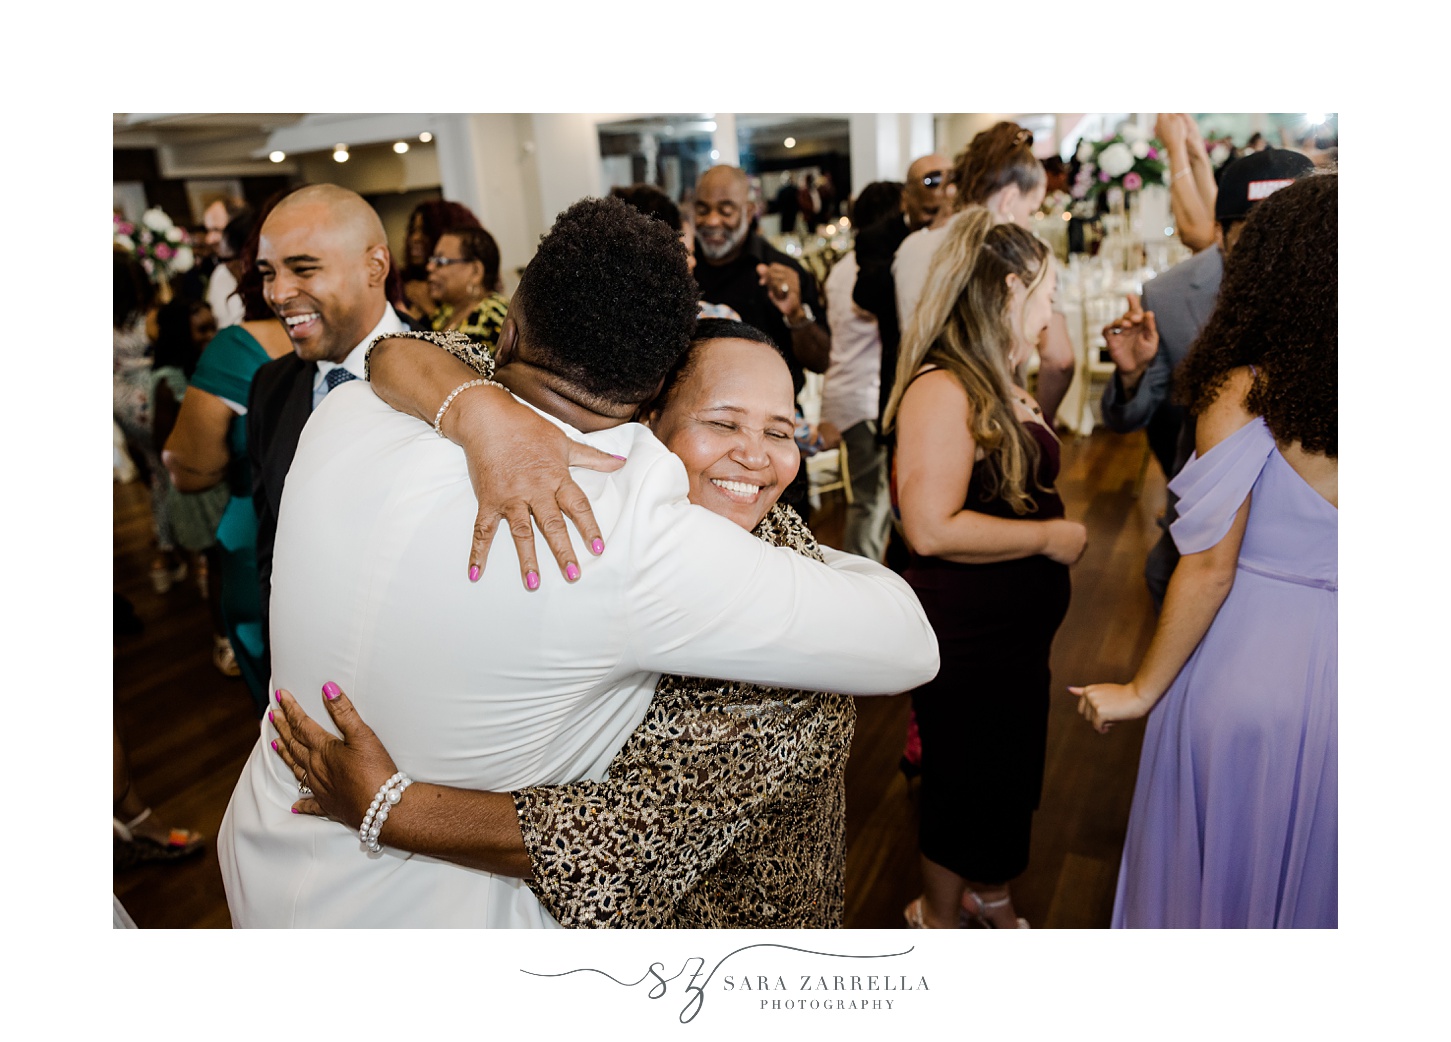 guests hug on dance floor at RI wedding reception